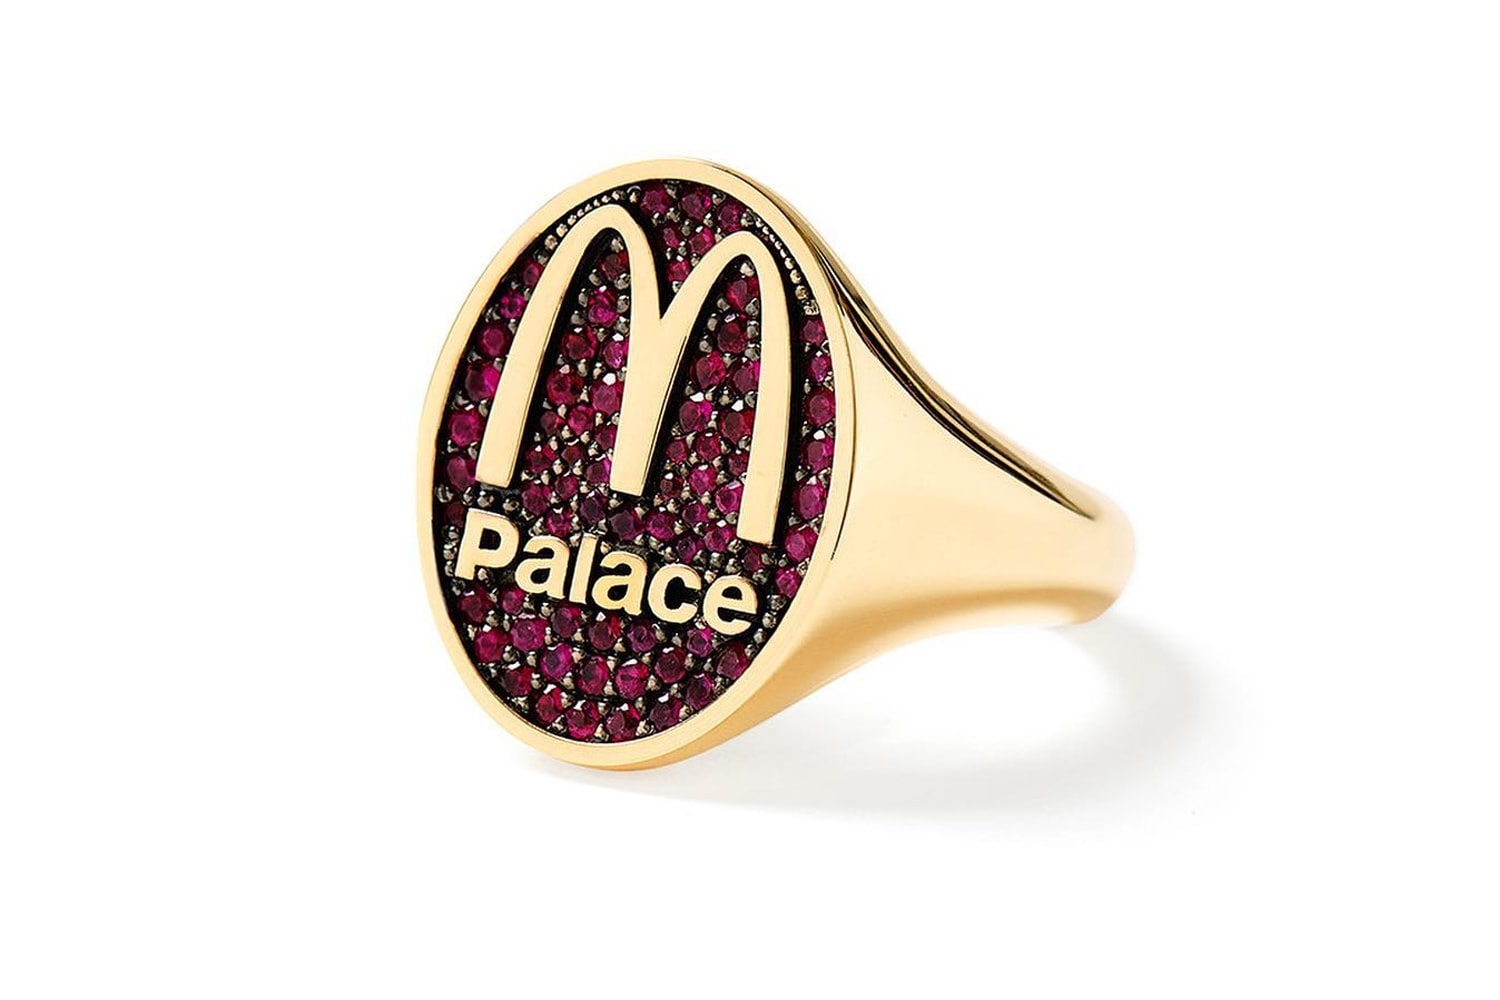 맥도날드 x 팔라스 컬렉션의 반지가 공개됐다, mcdonalds, palace, palace skateboards, 팔라스